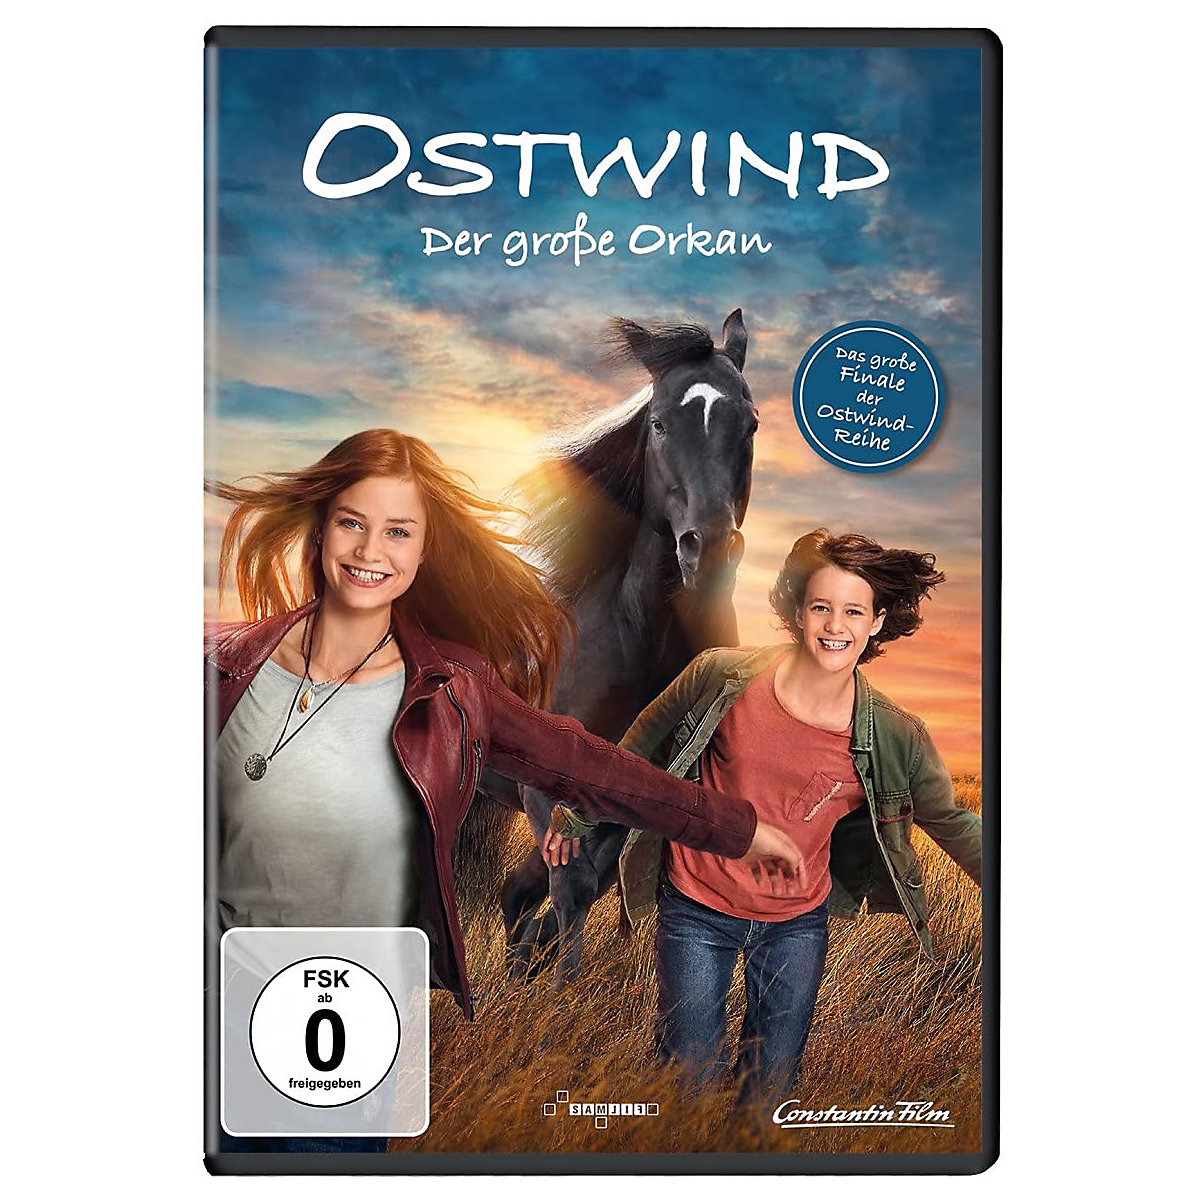 Universal DVD Ostwind Film 5 Der große Orkan